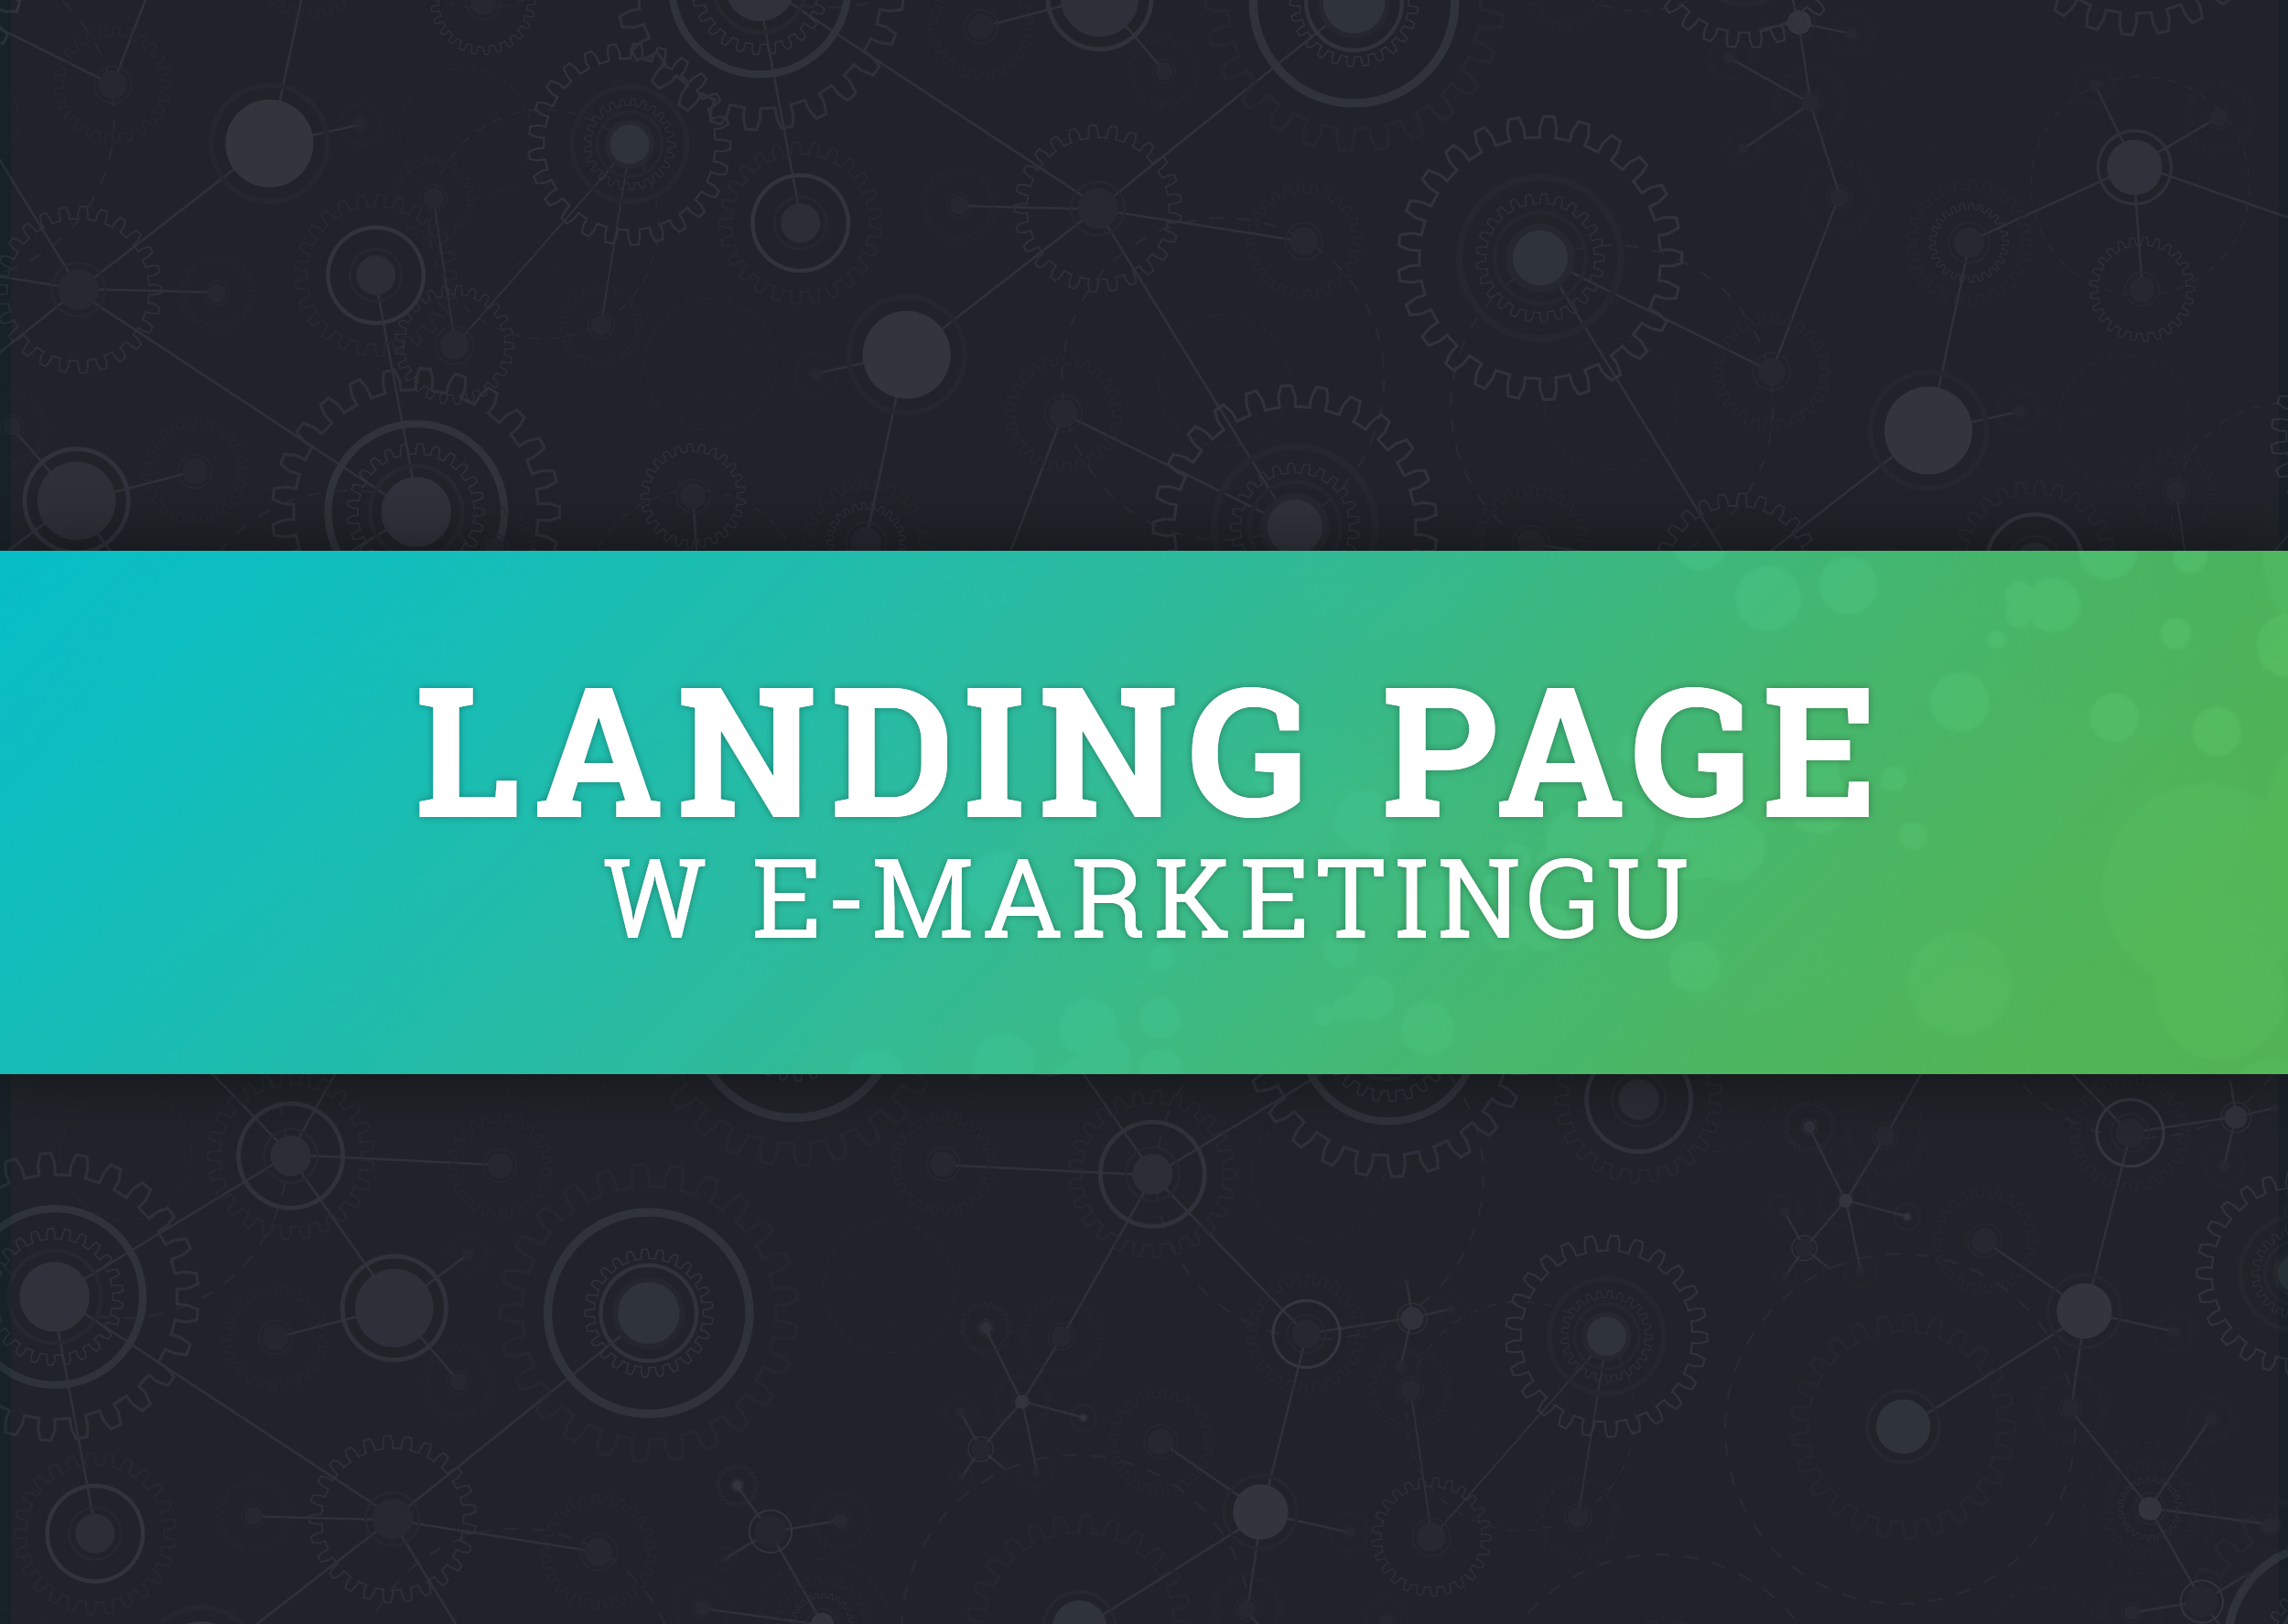 Co to takiego i jak powinien wyglądać "Landing page"